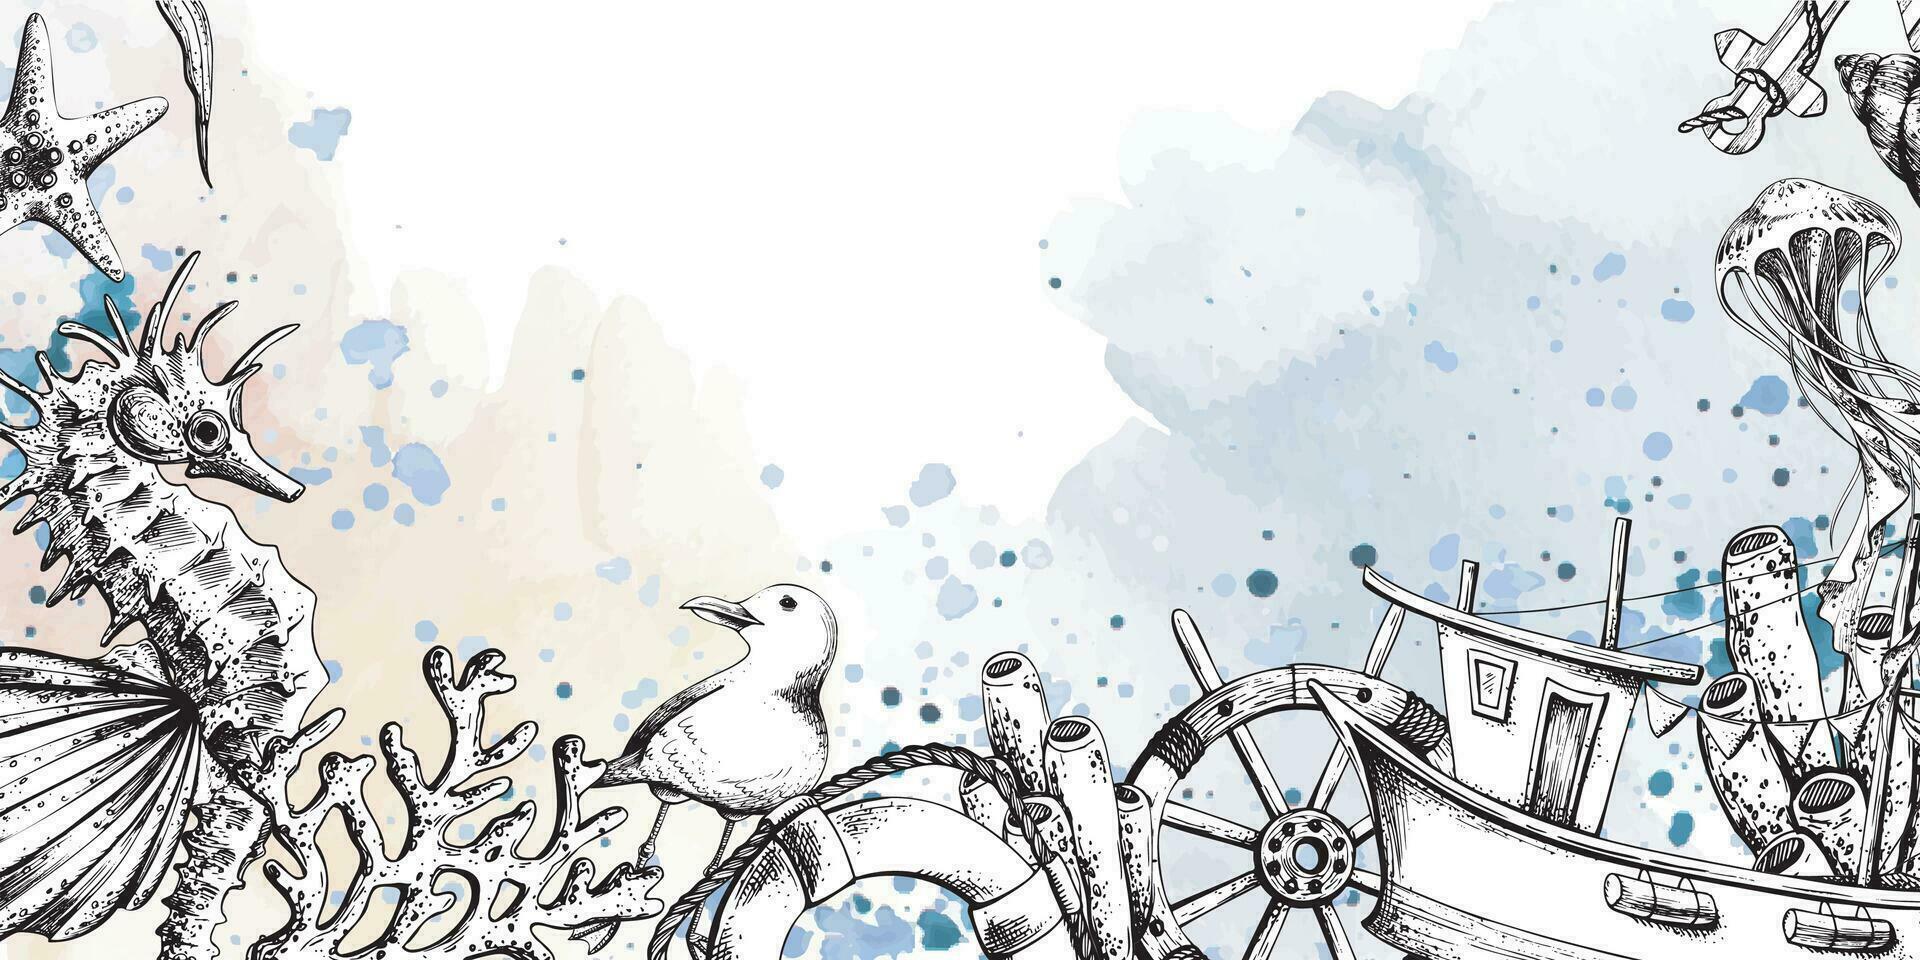 marina animales con un pescar bote, un direccion rueda y un vida boya. ilustración de mano dibujado gráficos, vector en eps formato. plantilla, marco